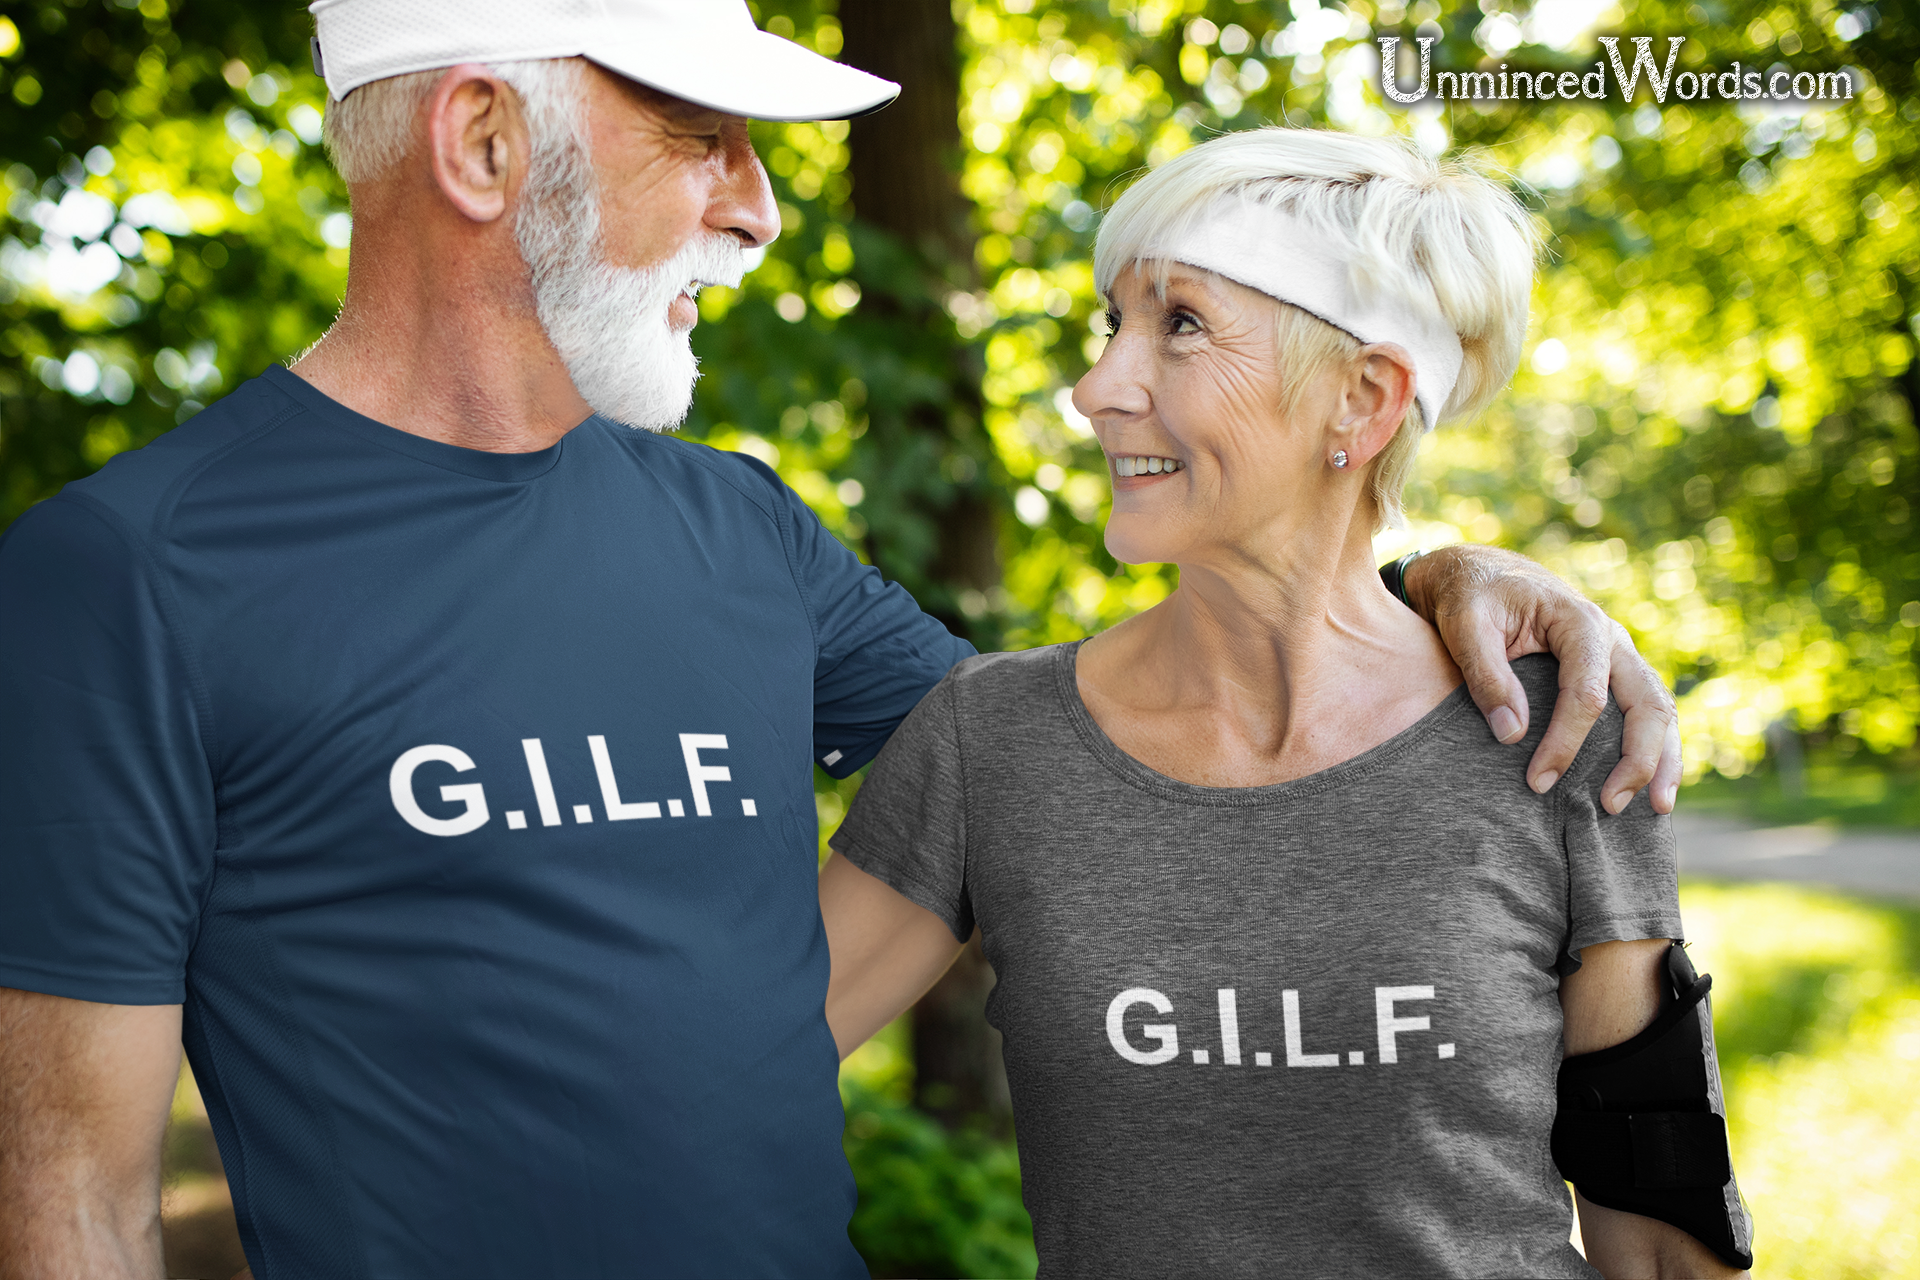 Grandmas and Grandpas feel love and appreciate humor too